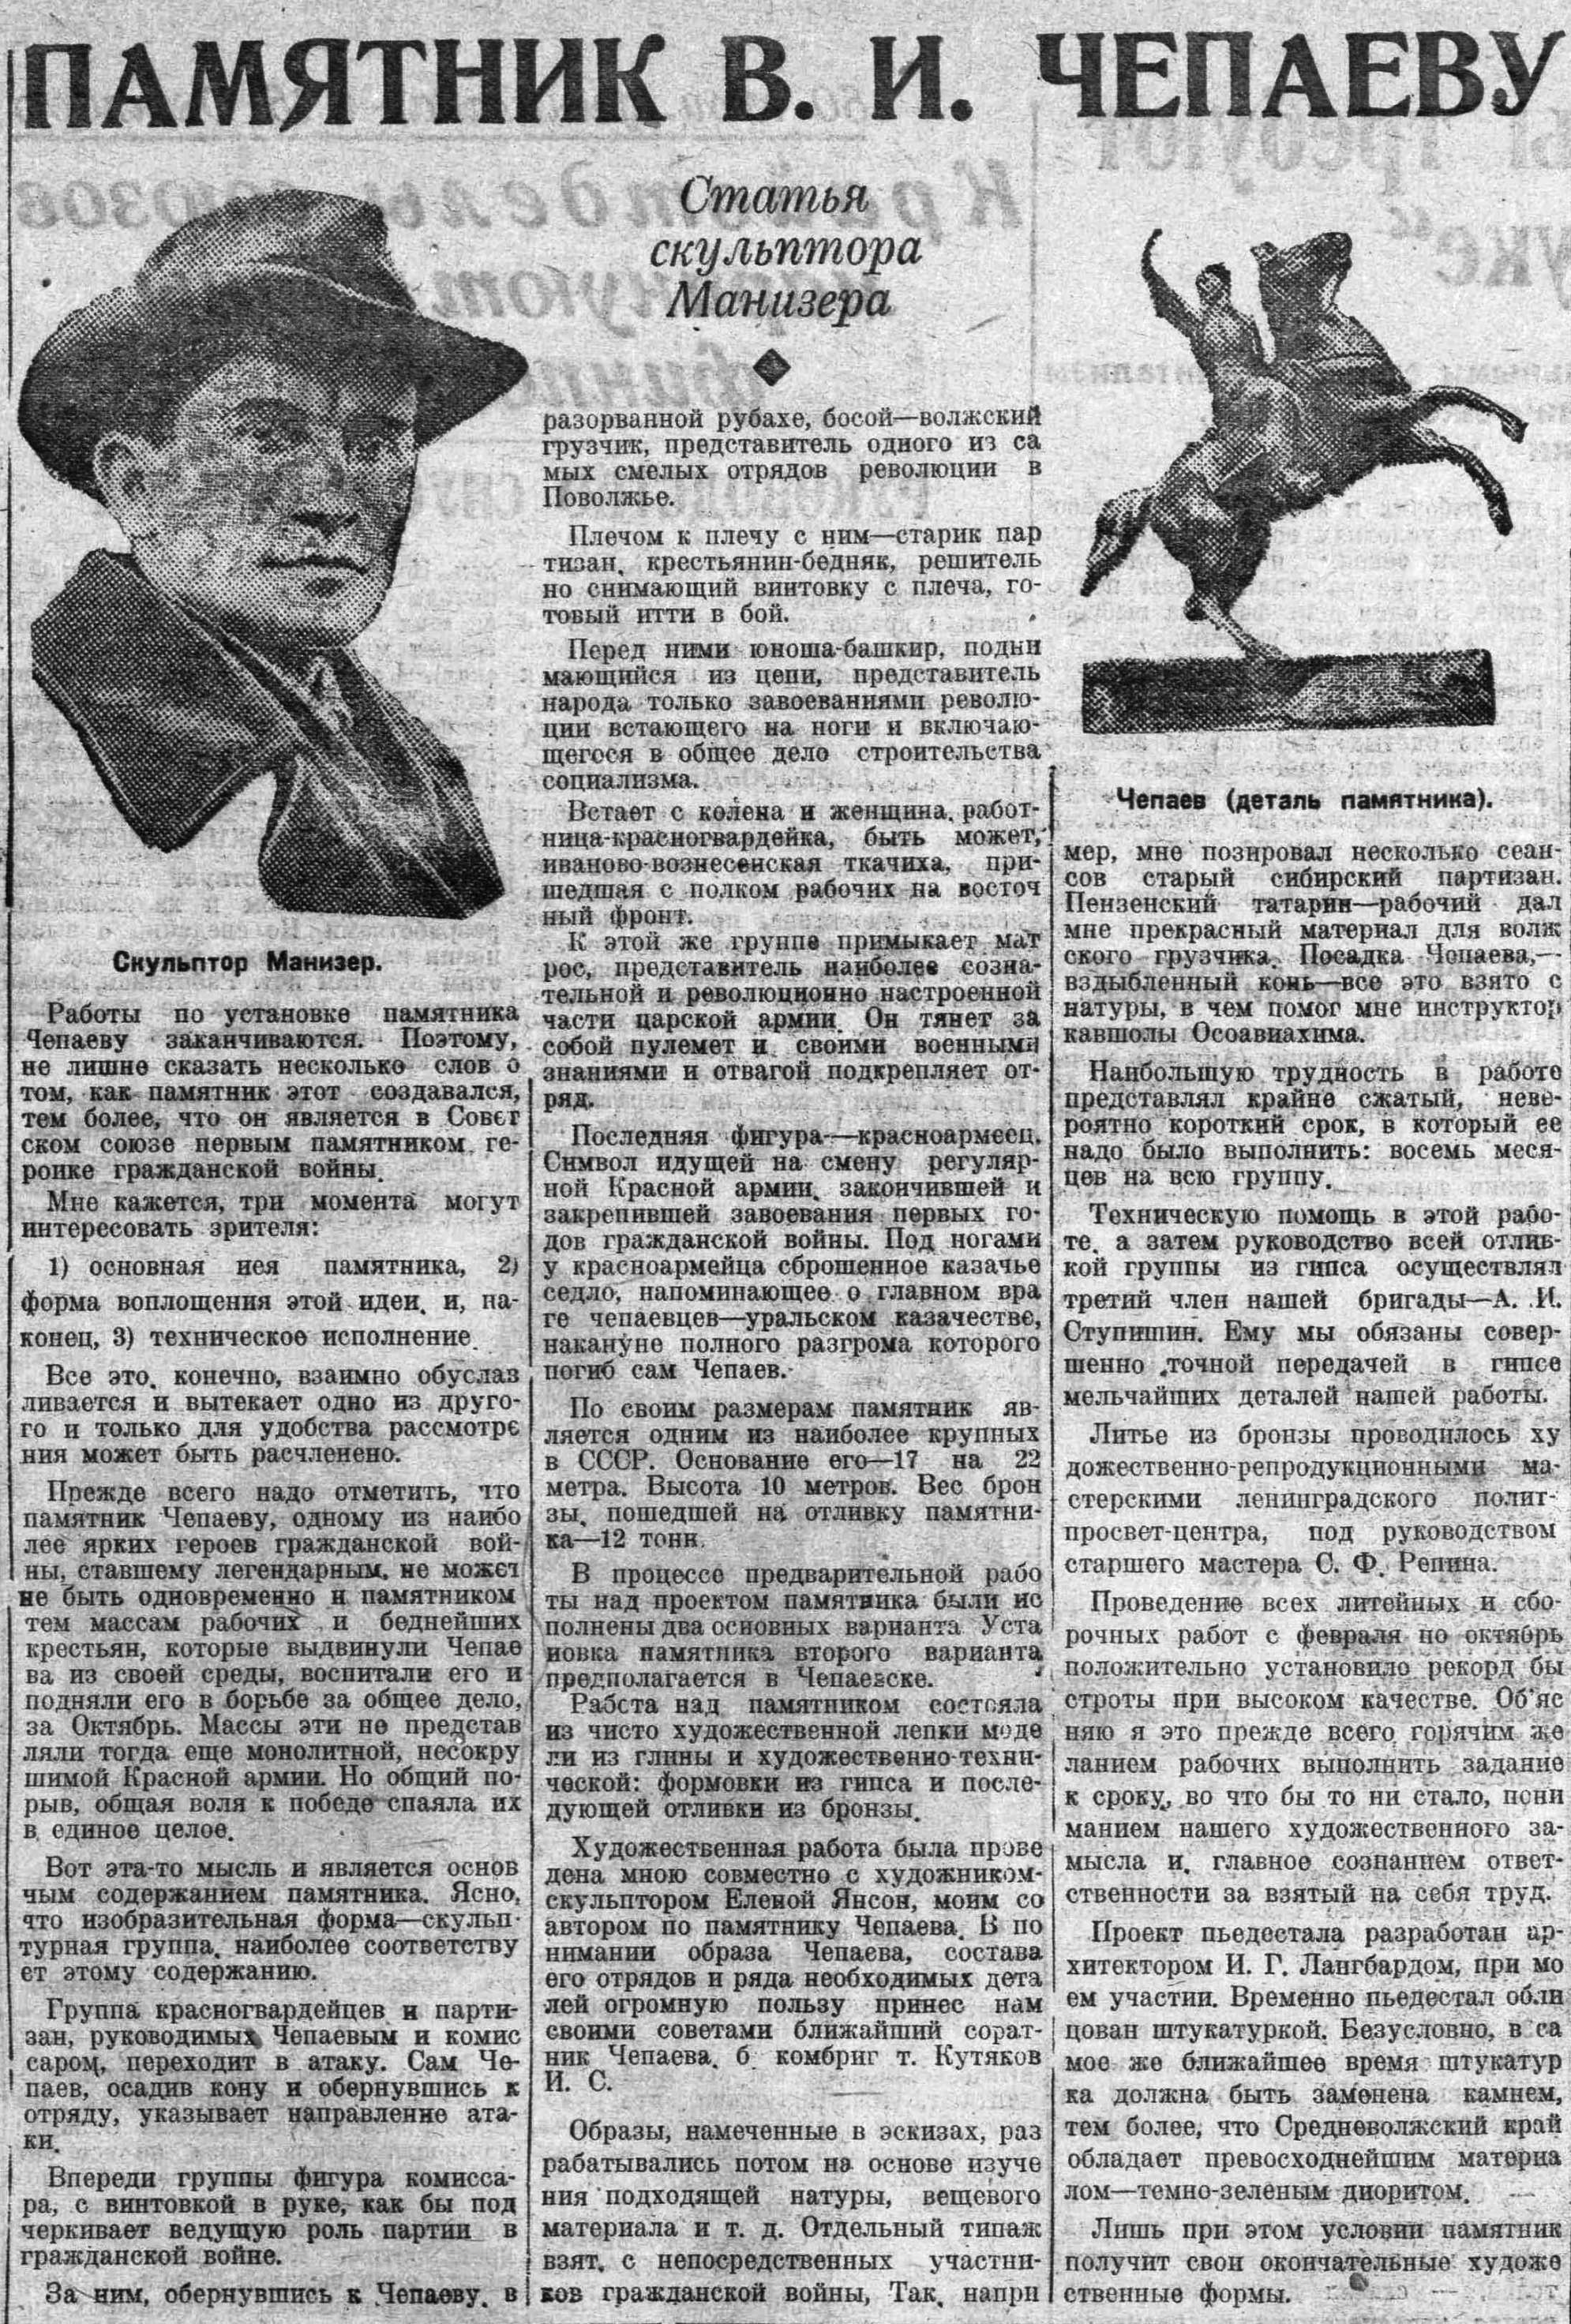 ВКа-1932-11-02-о памятнике Чапаеву